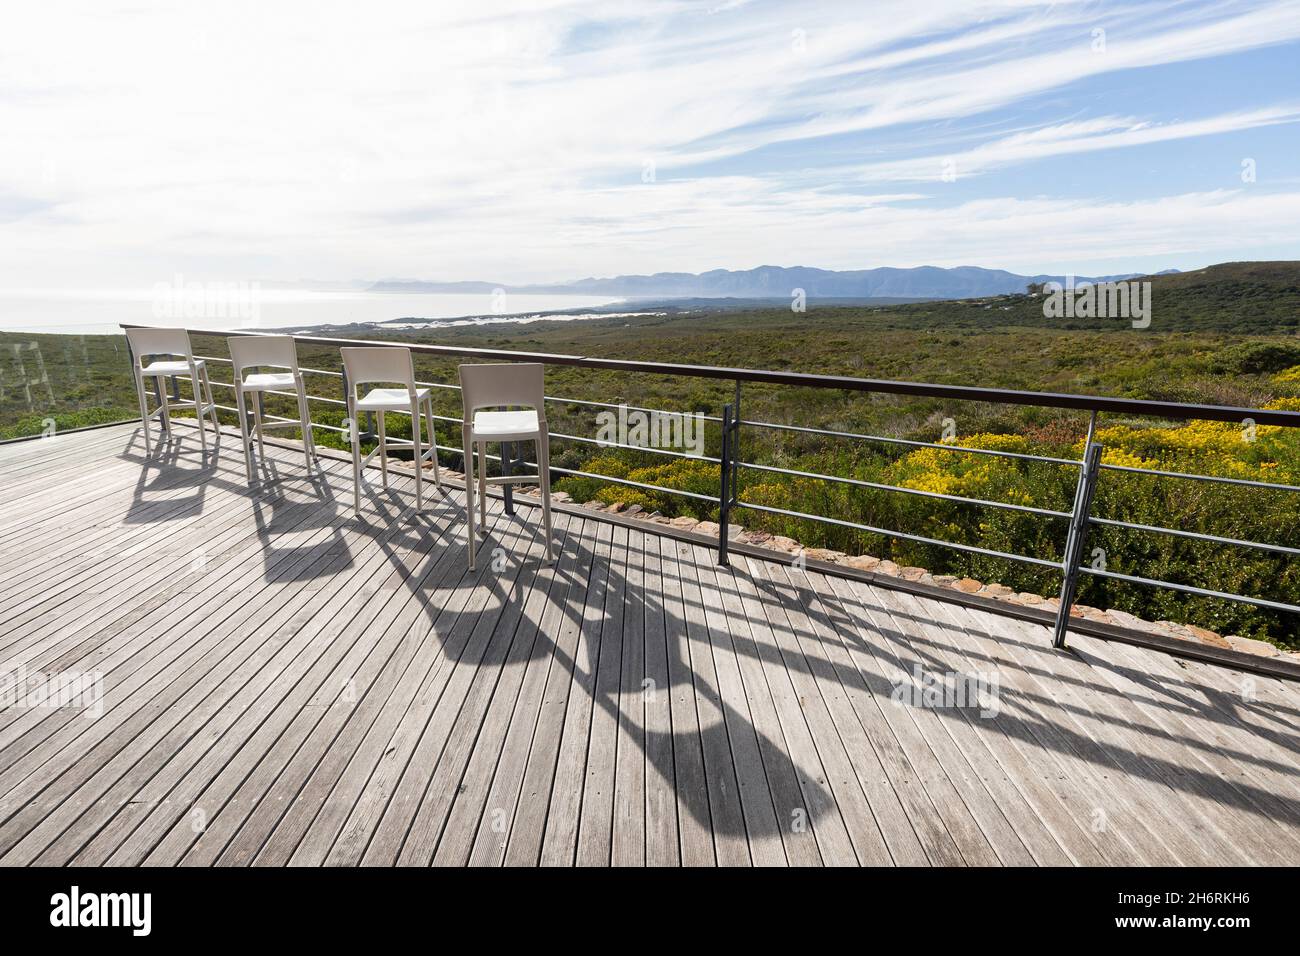 Une terrasse donnant sur un paysage de fynbos arbustives vertes Banque D'Images